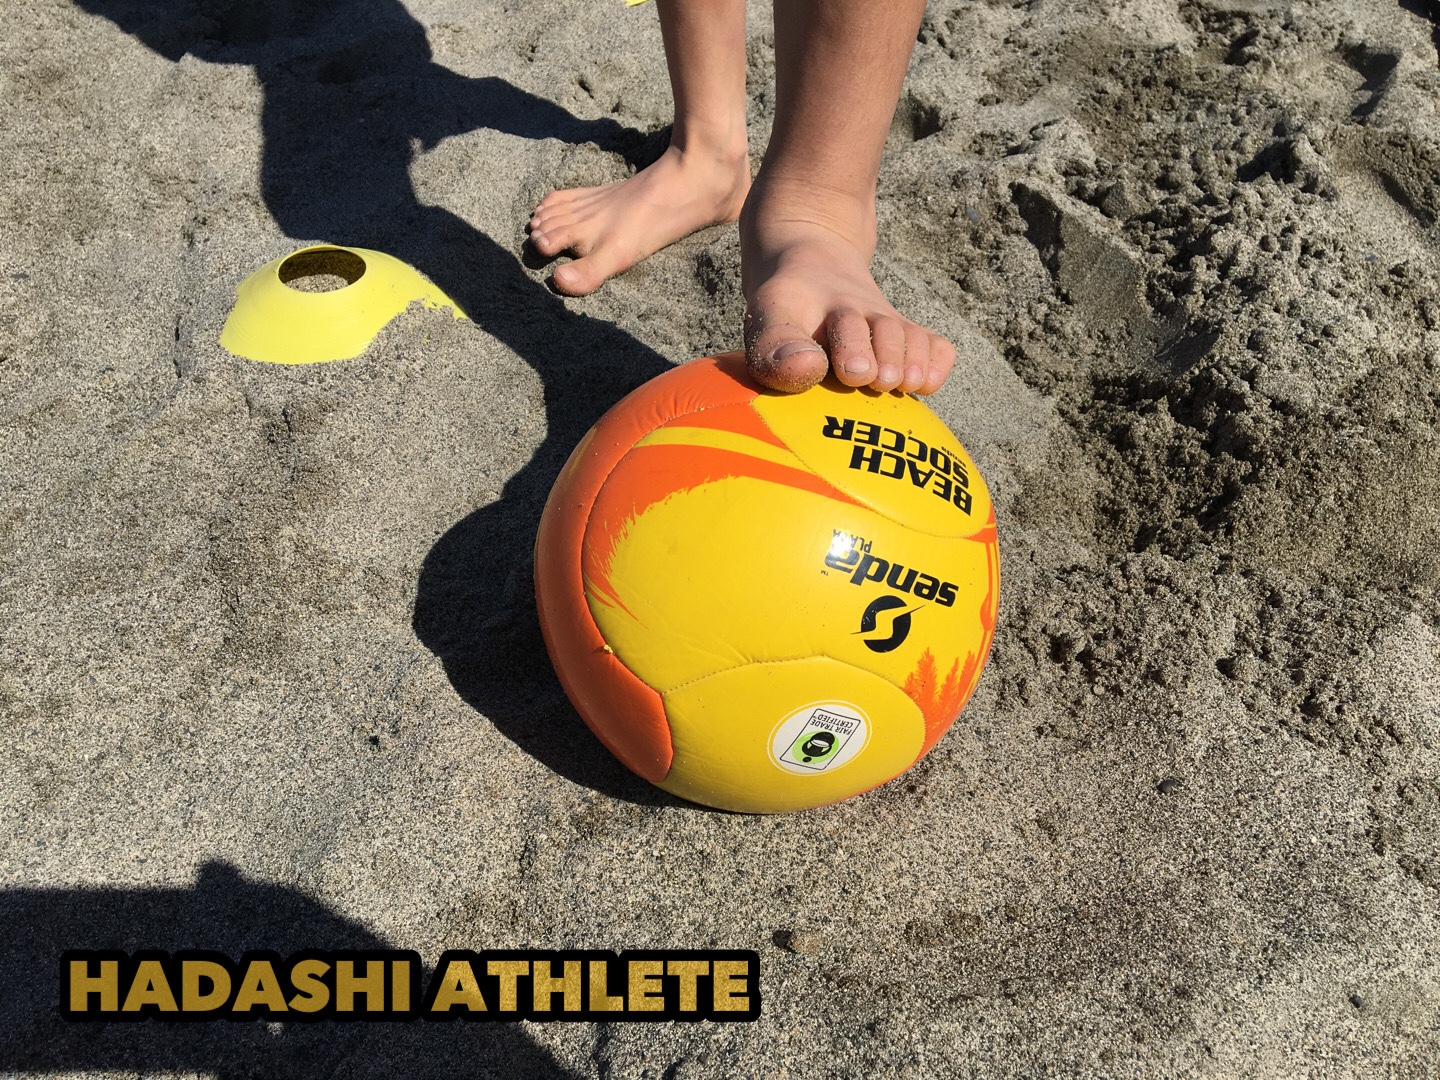 ビーチサッカールの4号級を探し求めて7年 やっと見つけた最高に蹴りやすいボール Hadashi Athlete